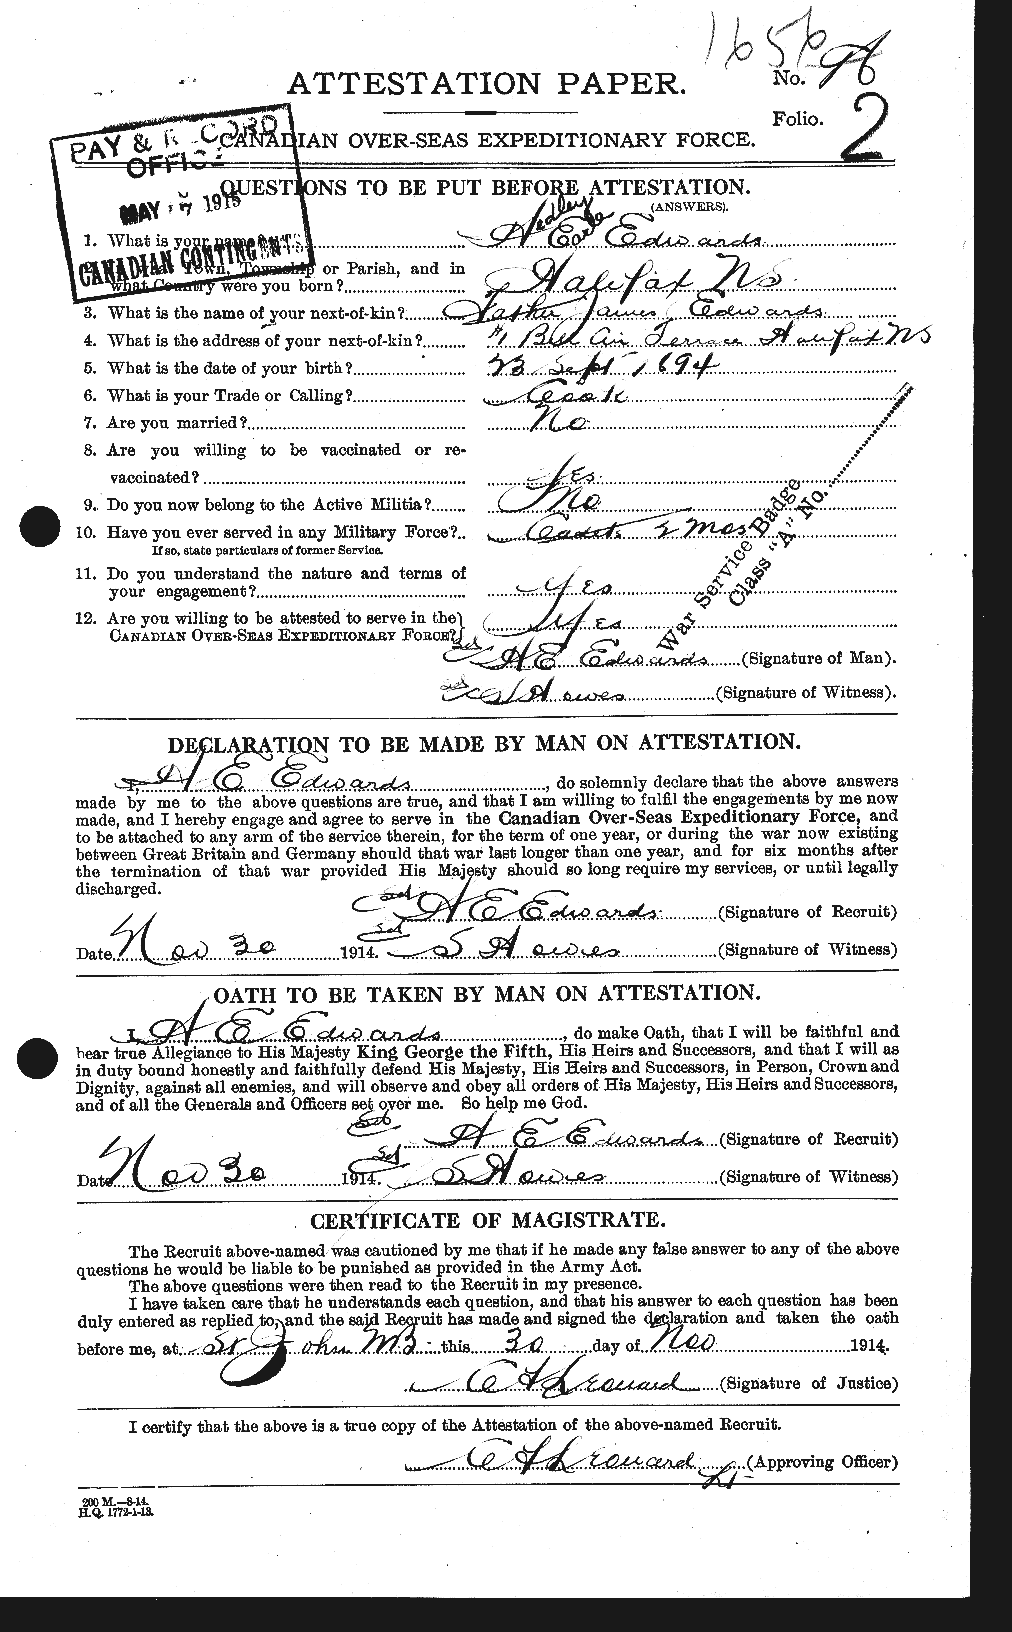 Dossiers du Personnel de la Première Guerre mondiale - CEC 309751a